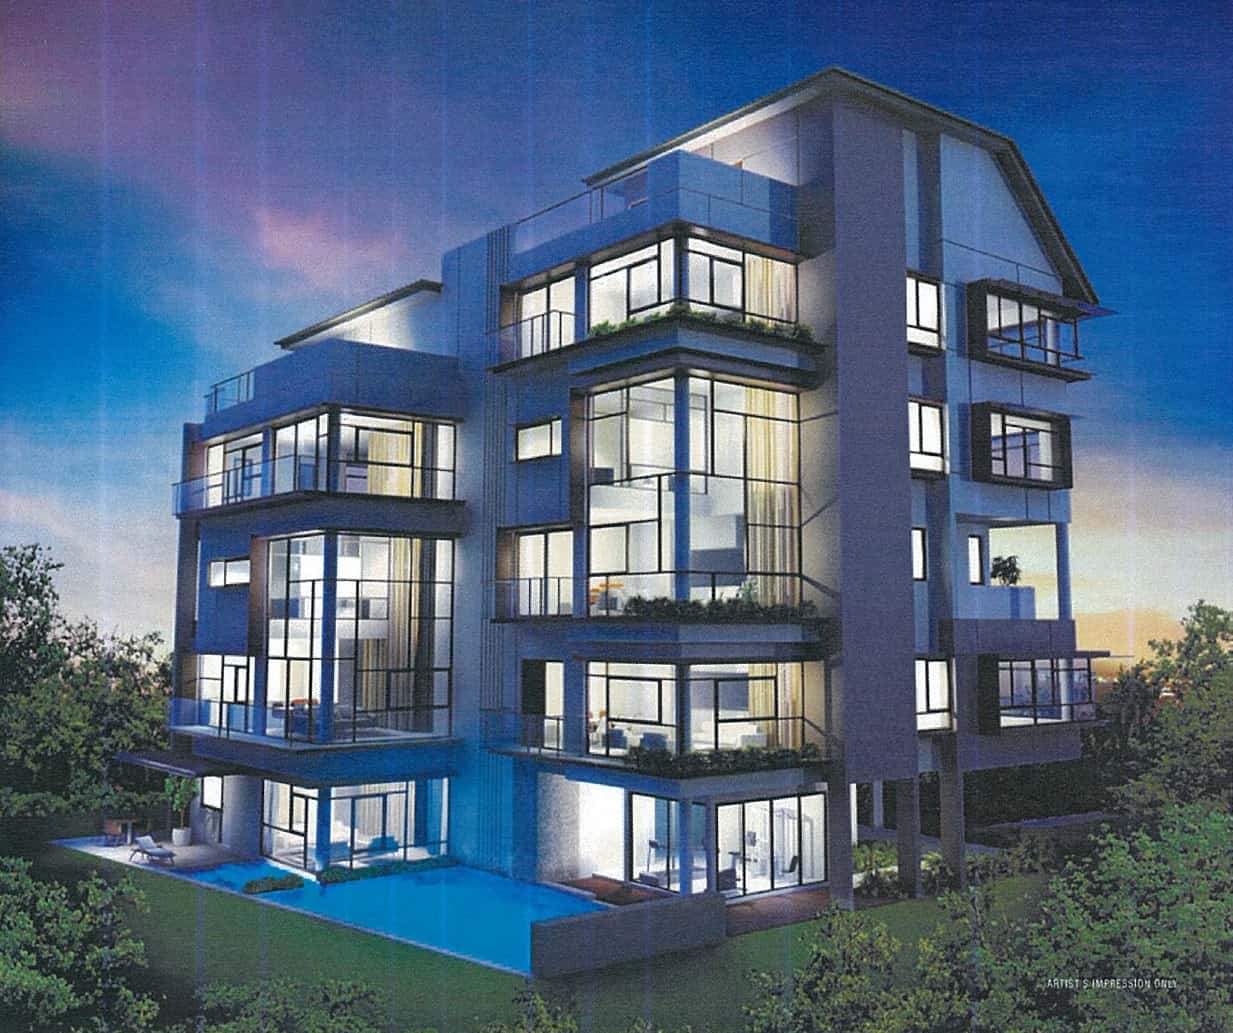 The Thomson Duplex Condominium